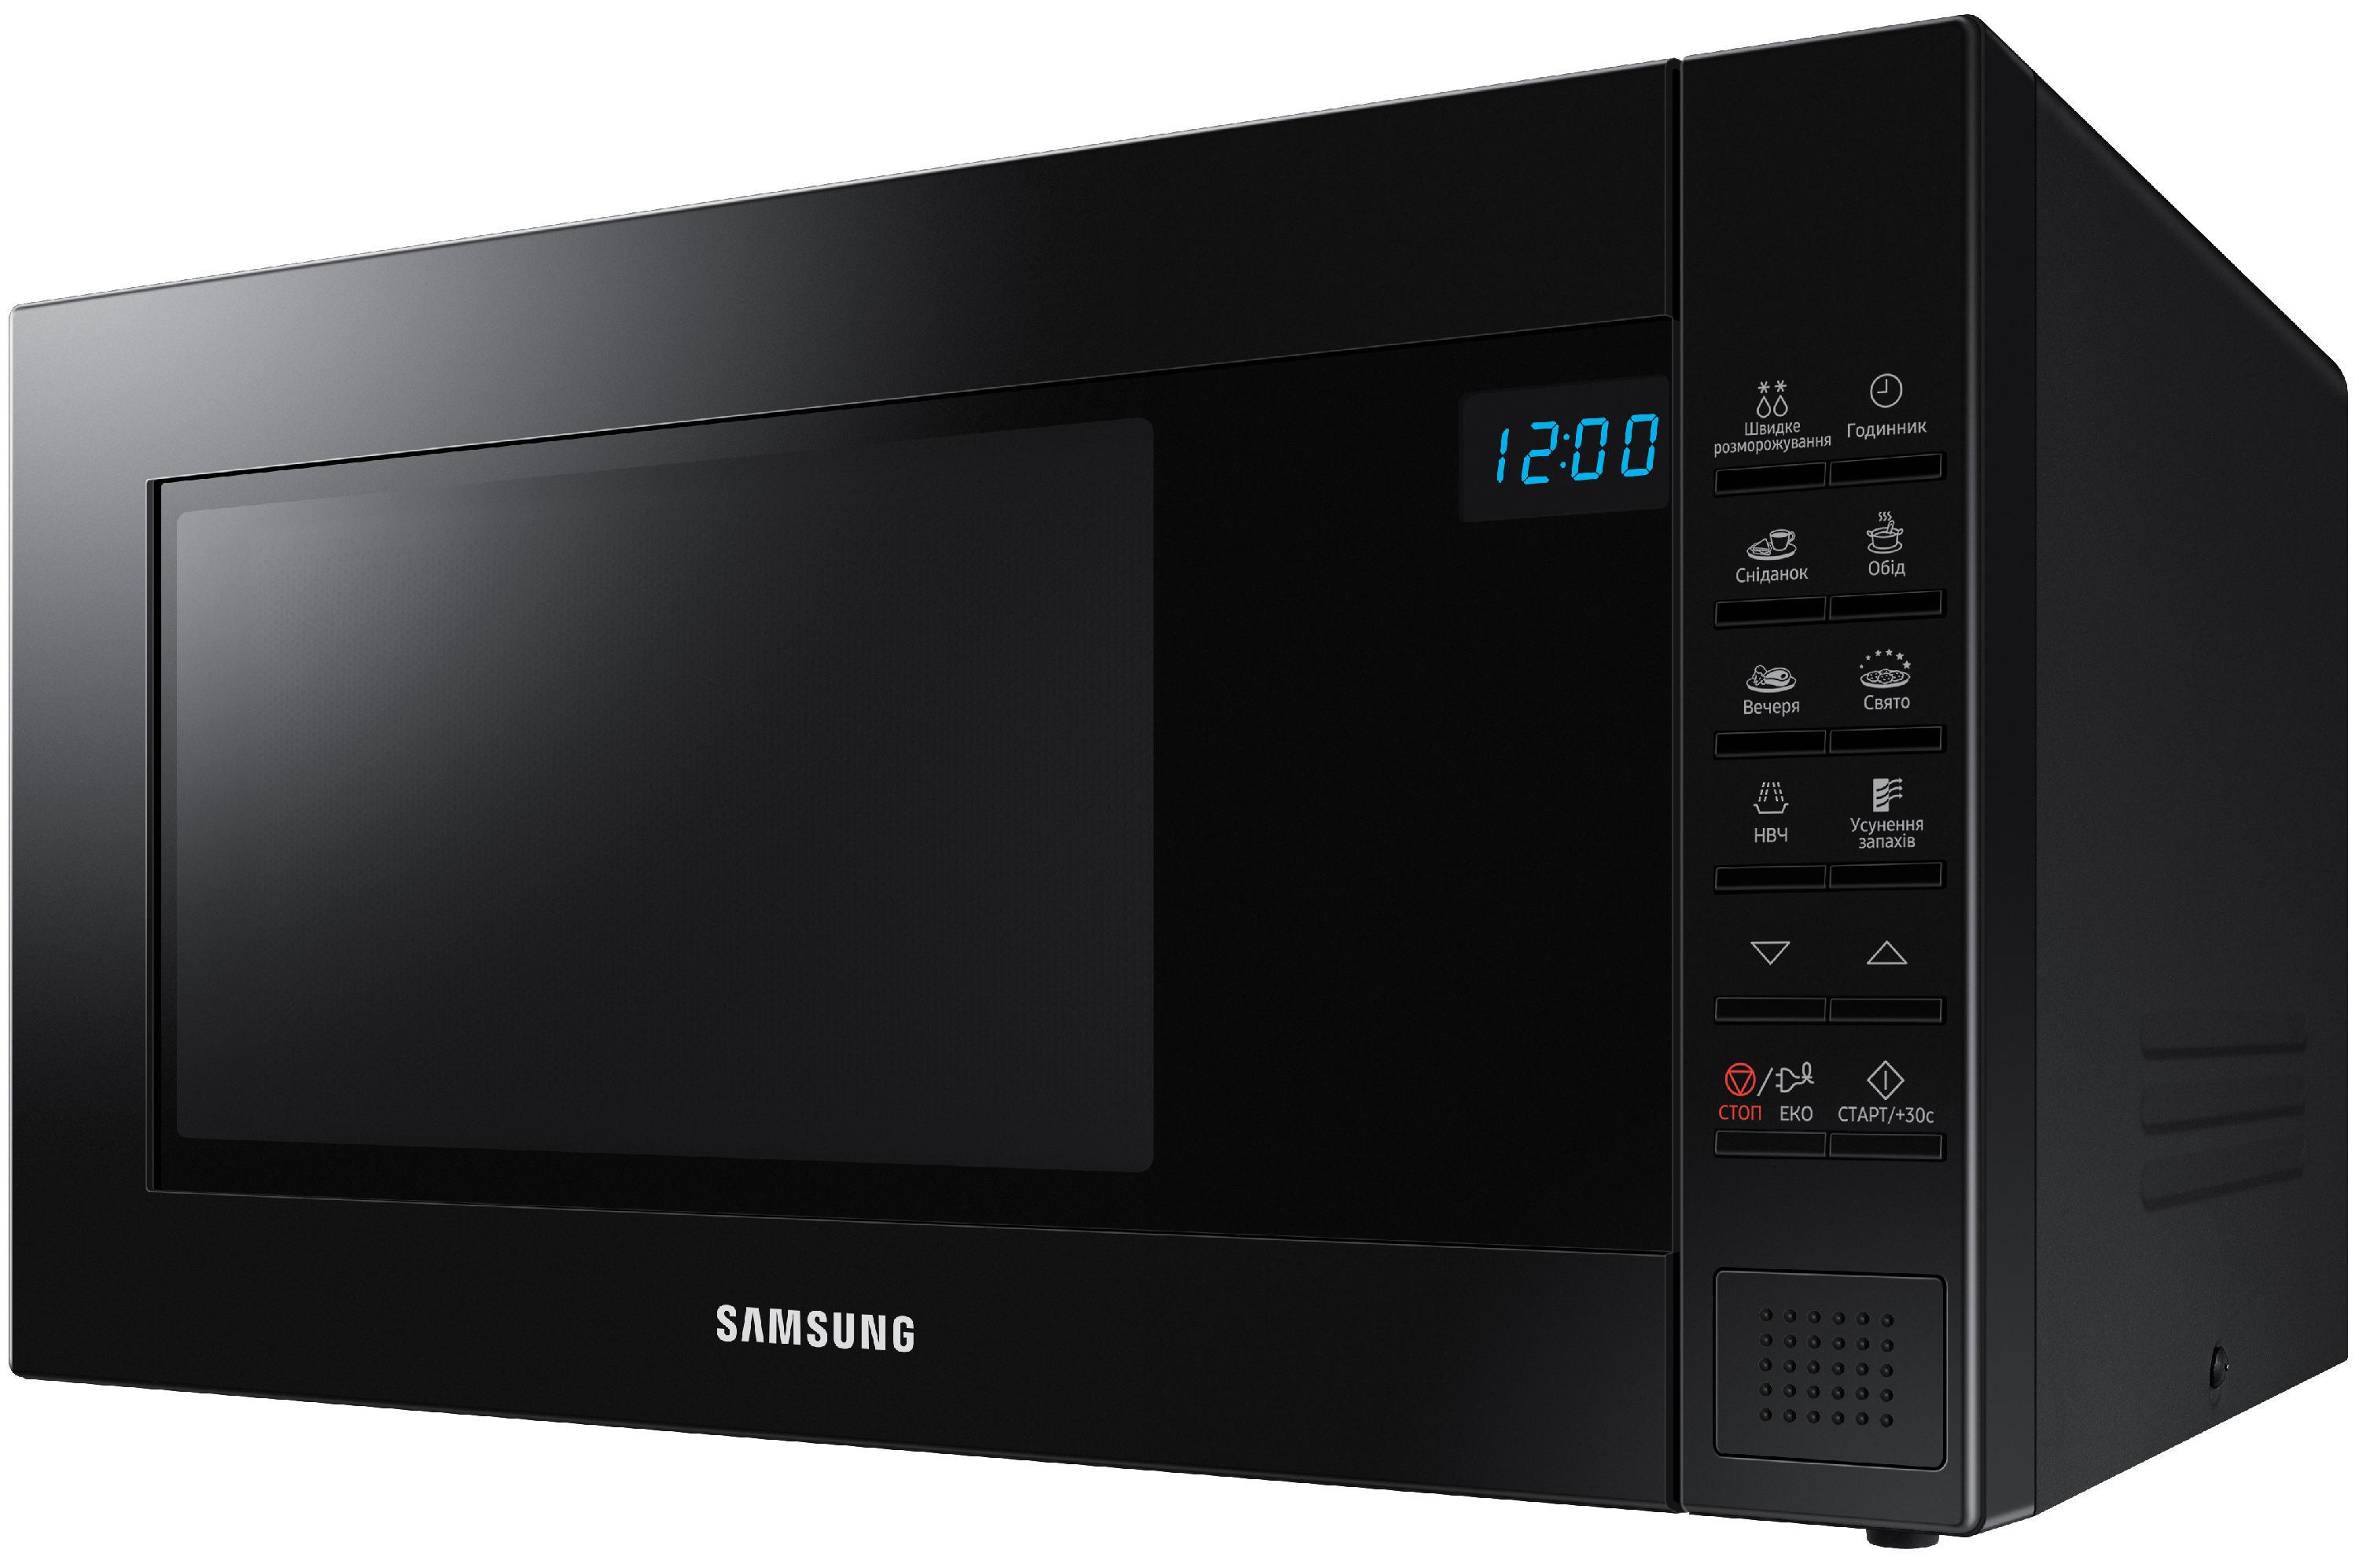 Микроволновая печь Samsung с грилем 23л, 800 Вт (GE88SU)